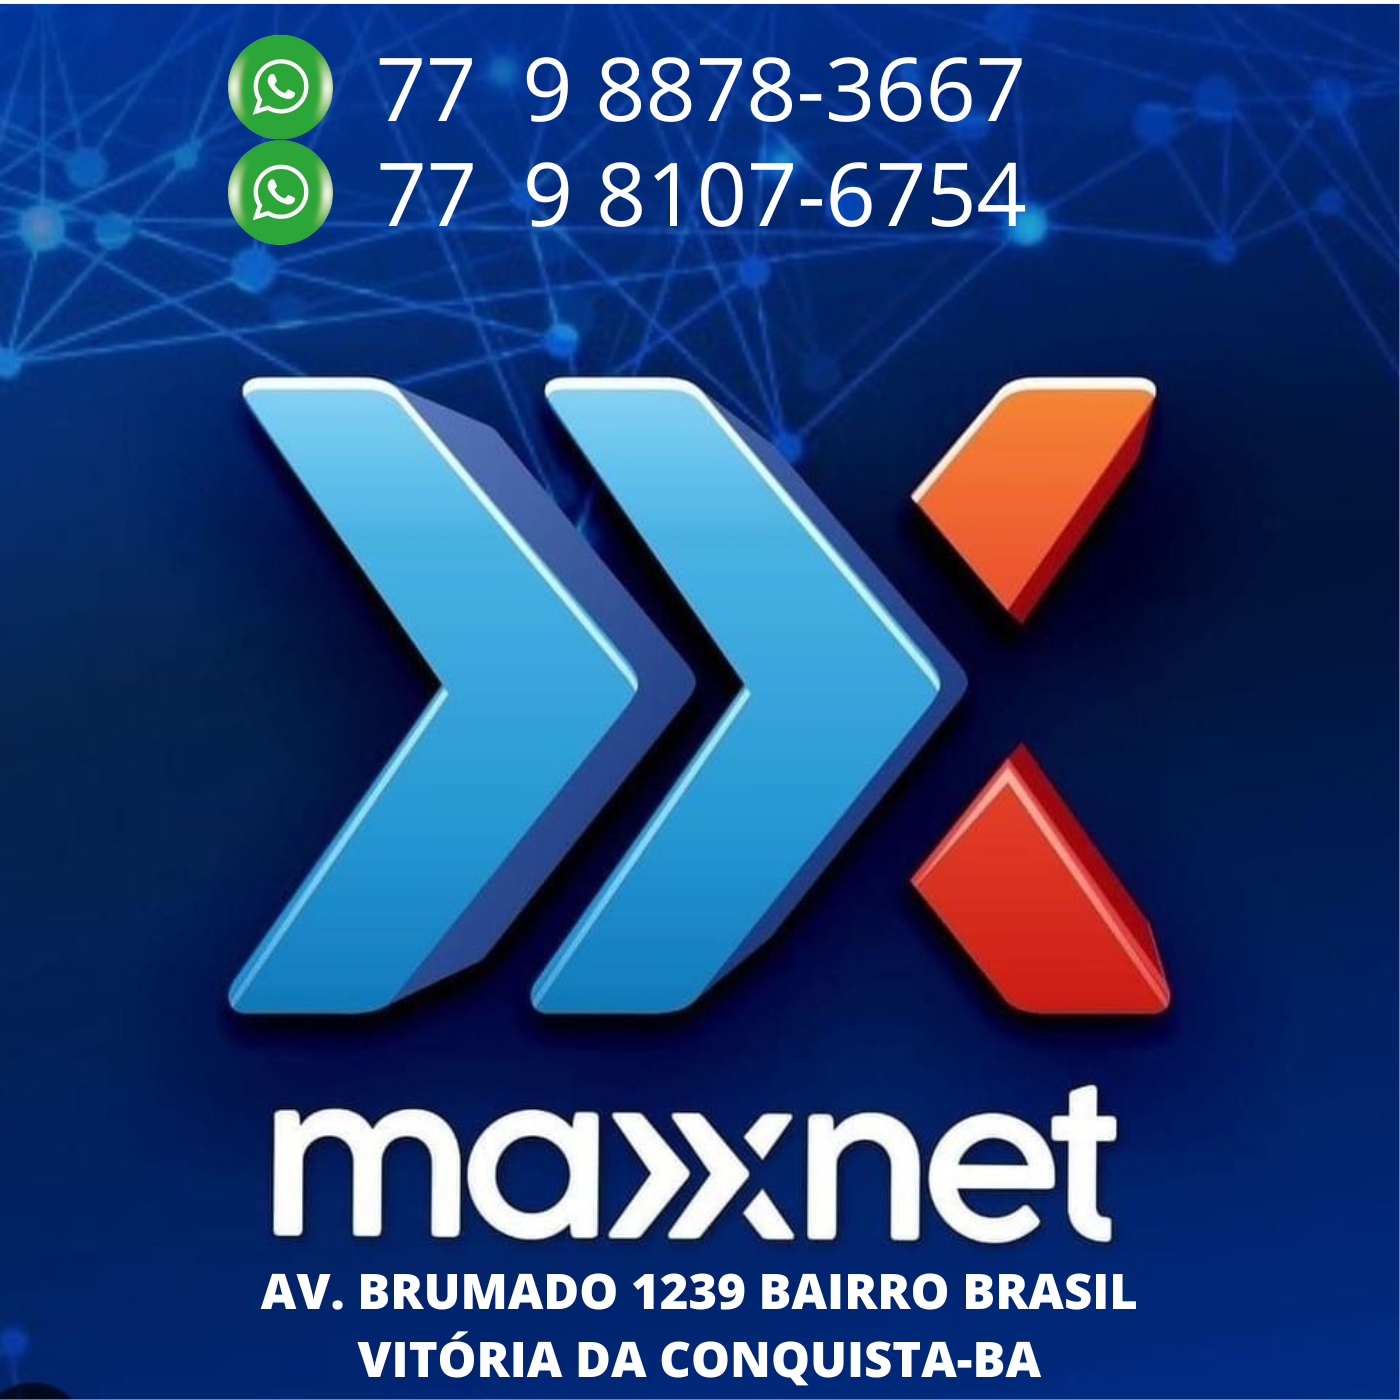 Maxxnet